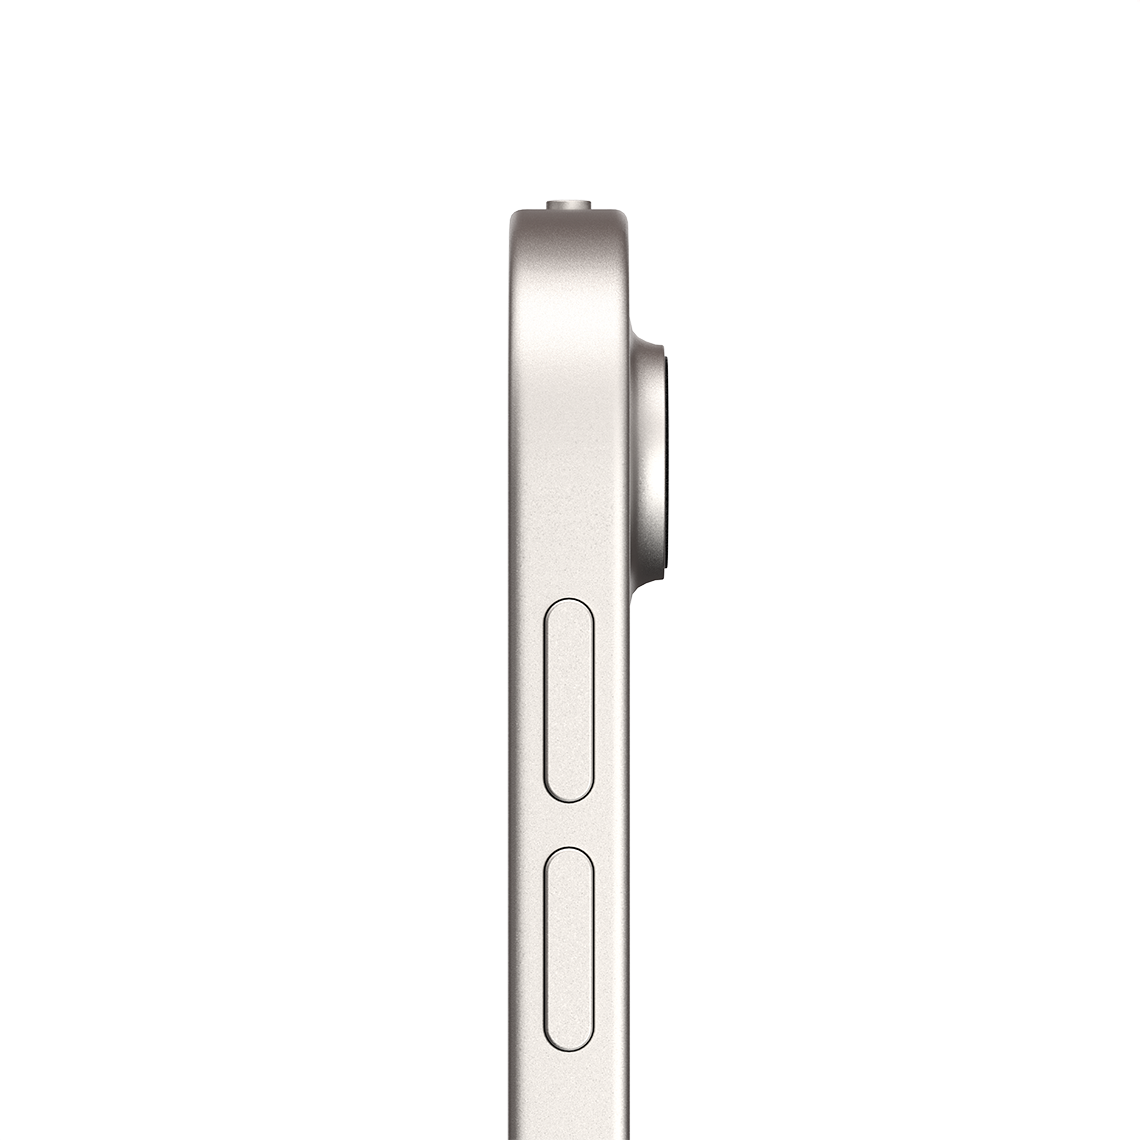 Apple iPad Air 10.9-inch 5th Generation - Starlight - 256GB, Wi-Fi, Grade A